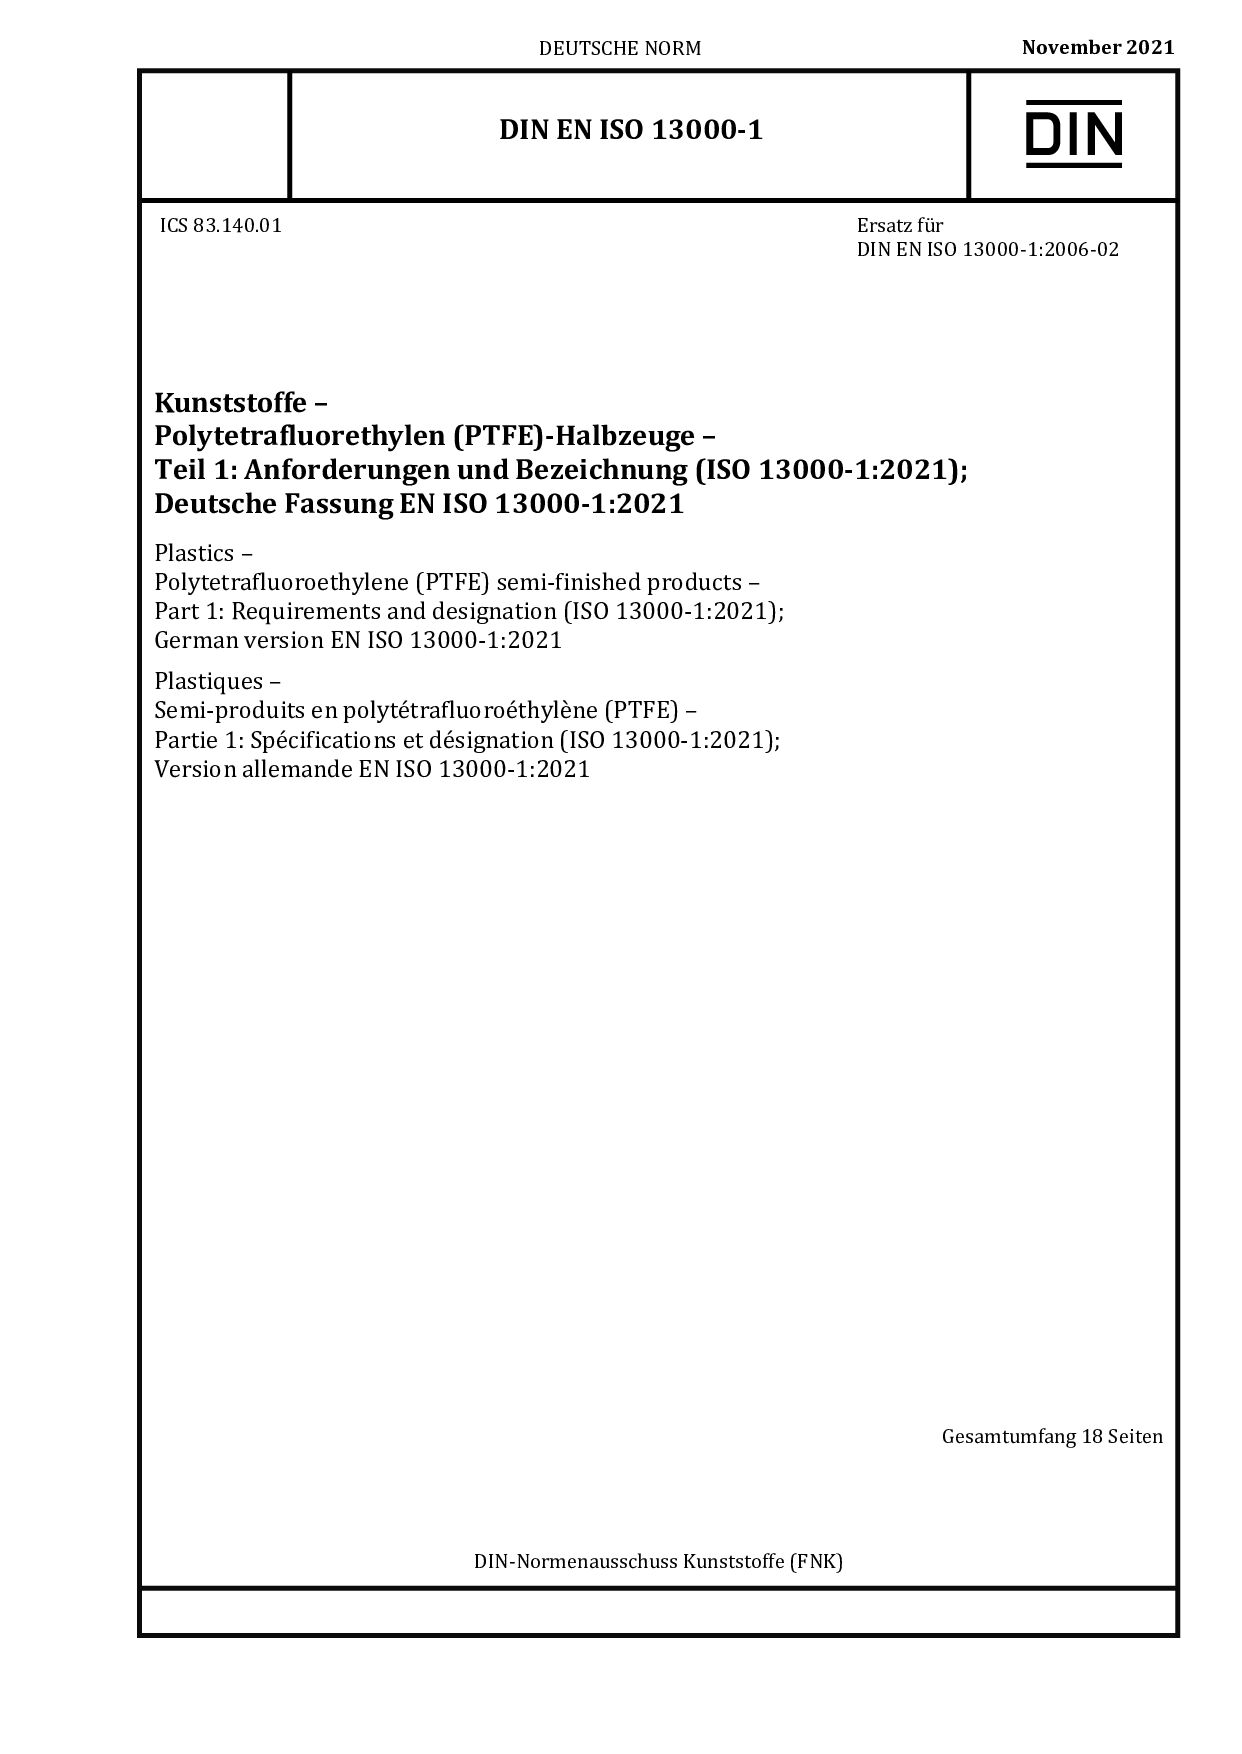 DIN EN ISO 13000-1:2021-11